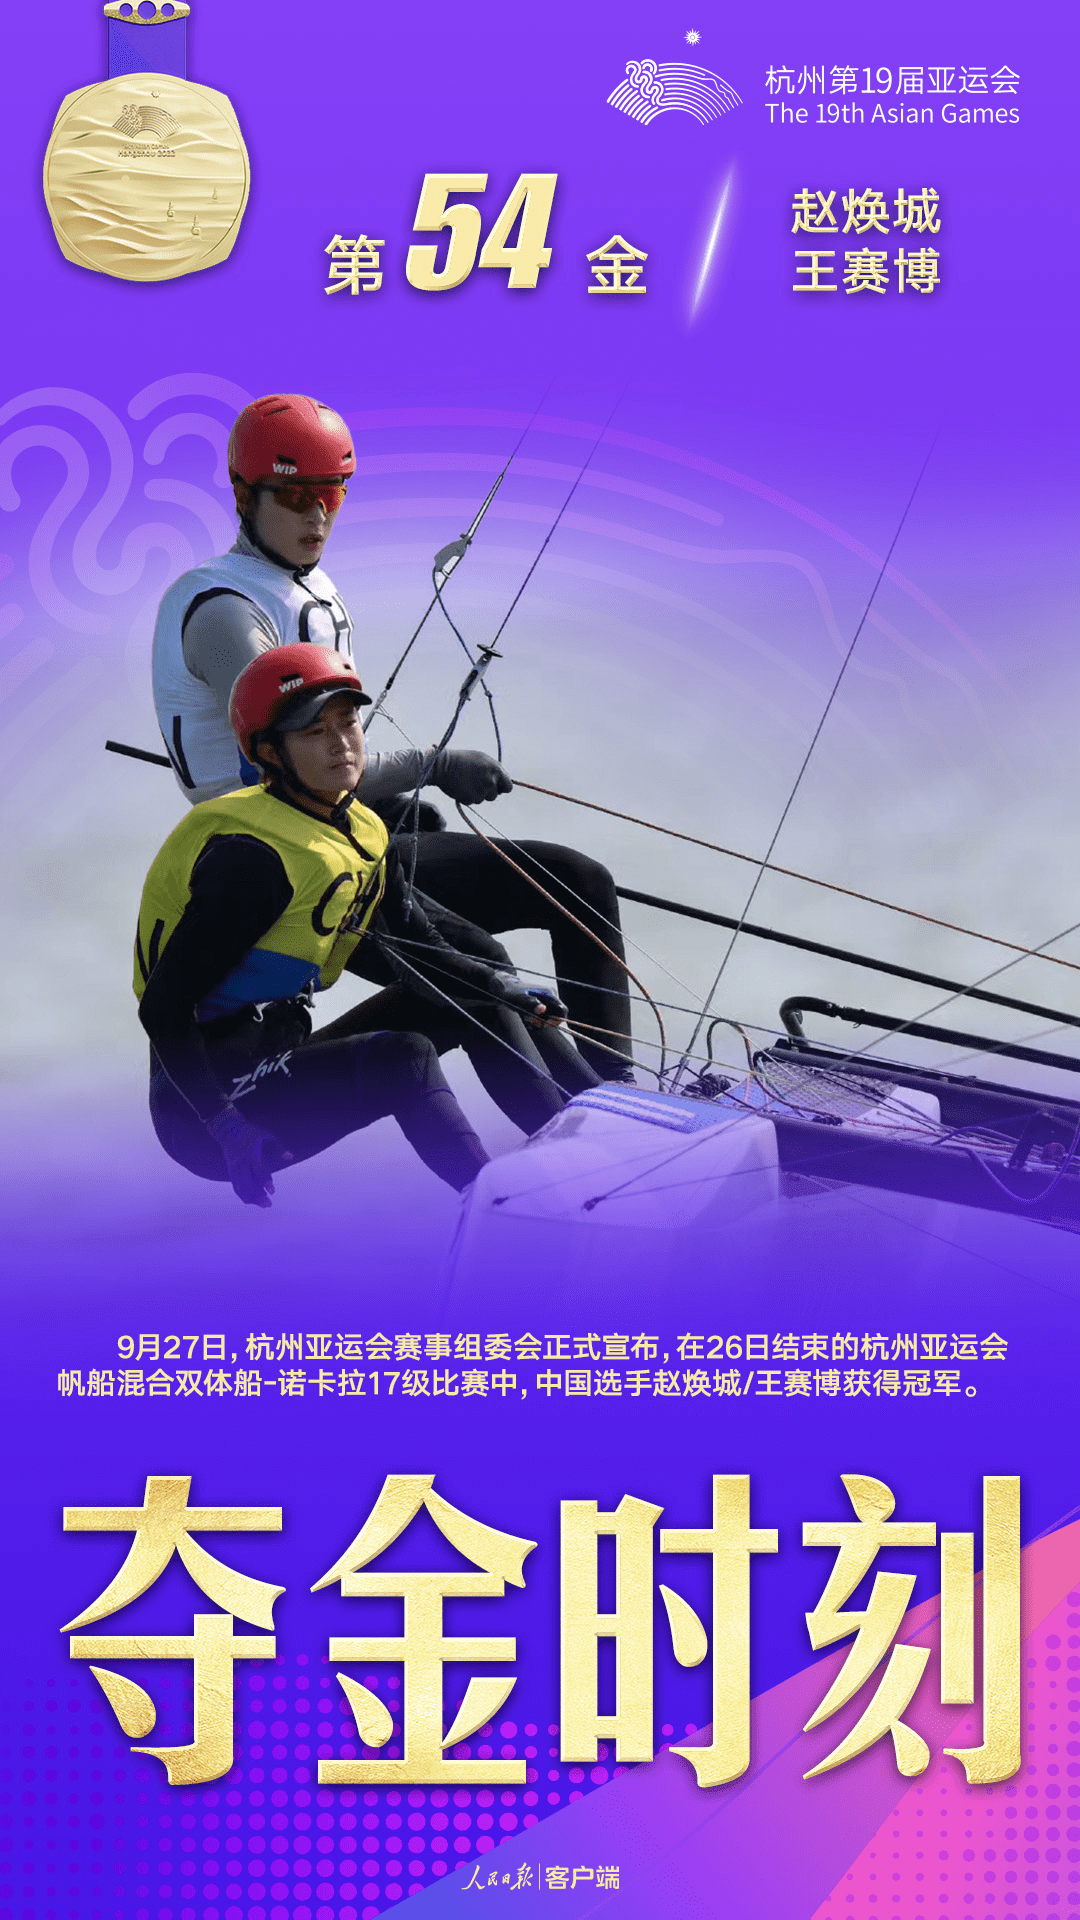 『 热点链接 』|| 祝贺！帆船赛中国队金牌“下饺子”了插图